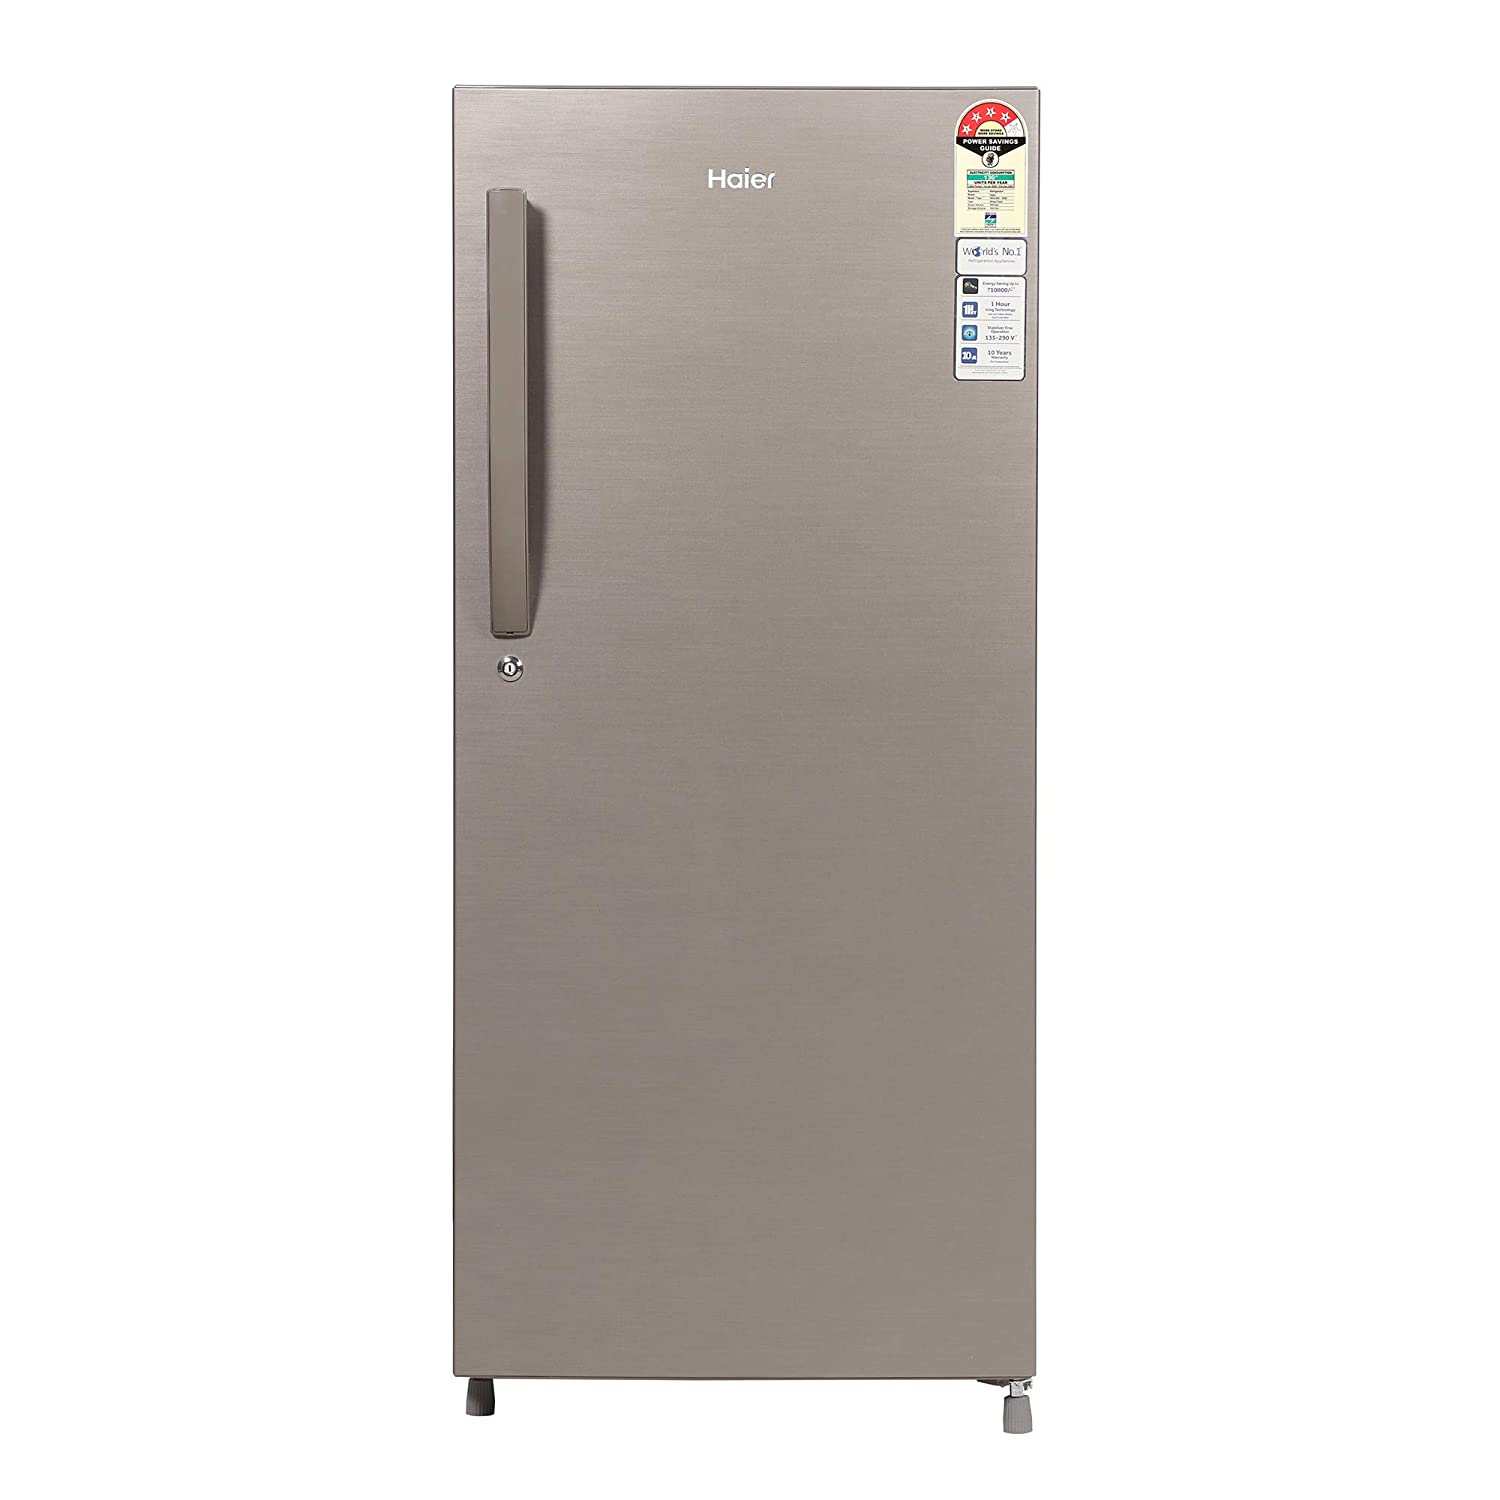 Best Single and Double Door Refrigerators